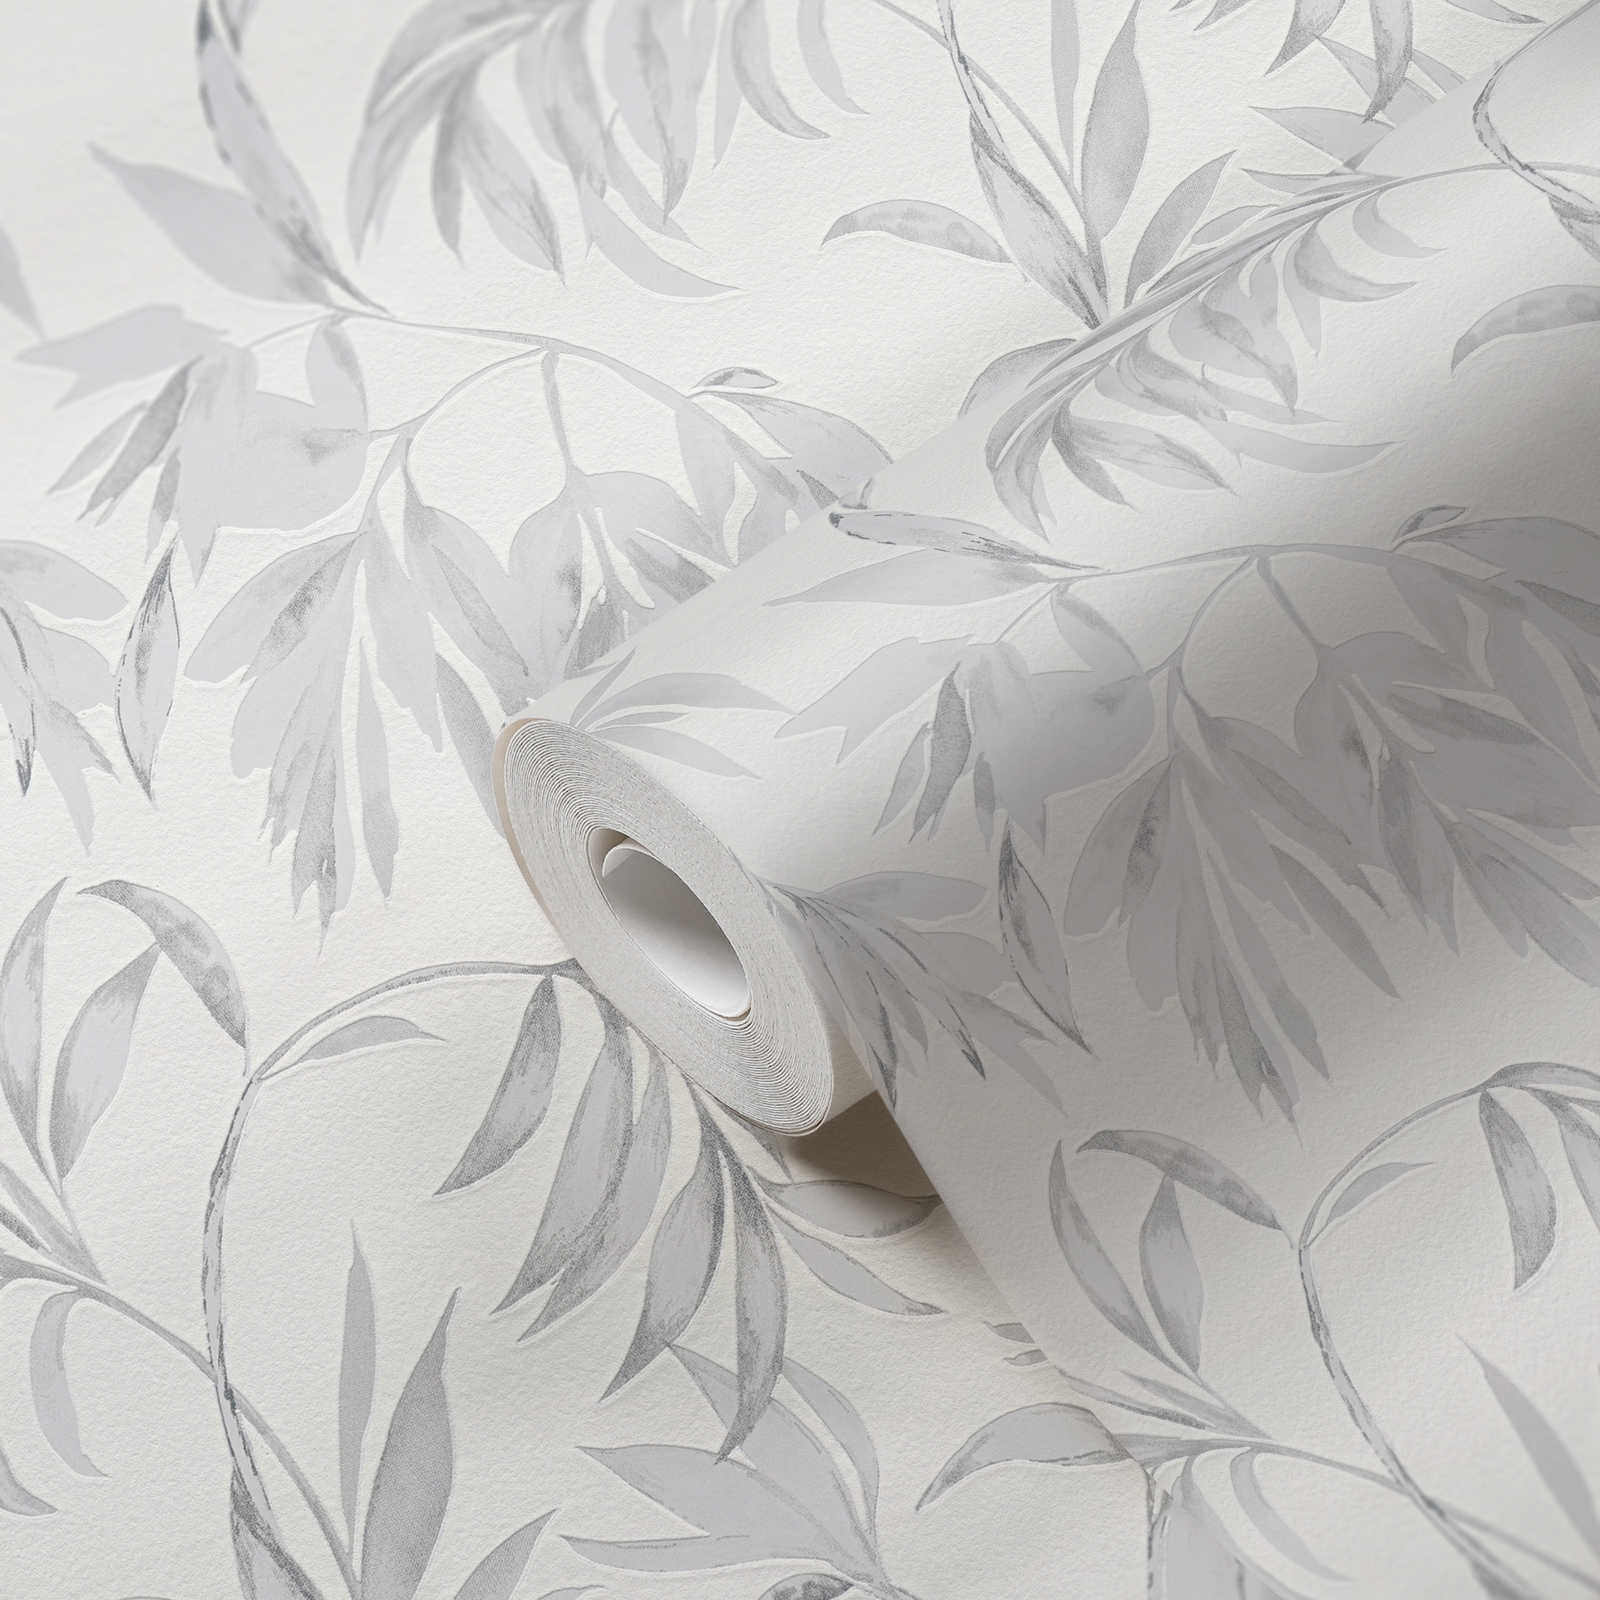             Papier peint Feuilles rinceaux style aquarelle - gris, blanc
        